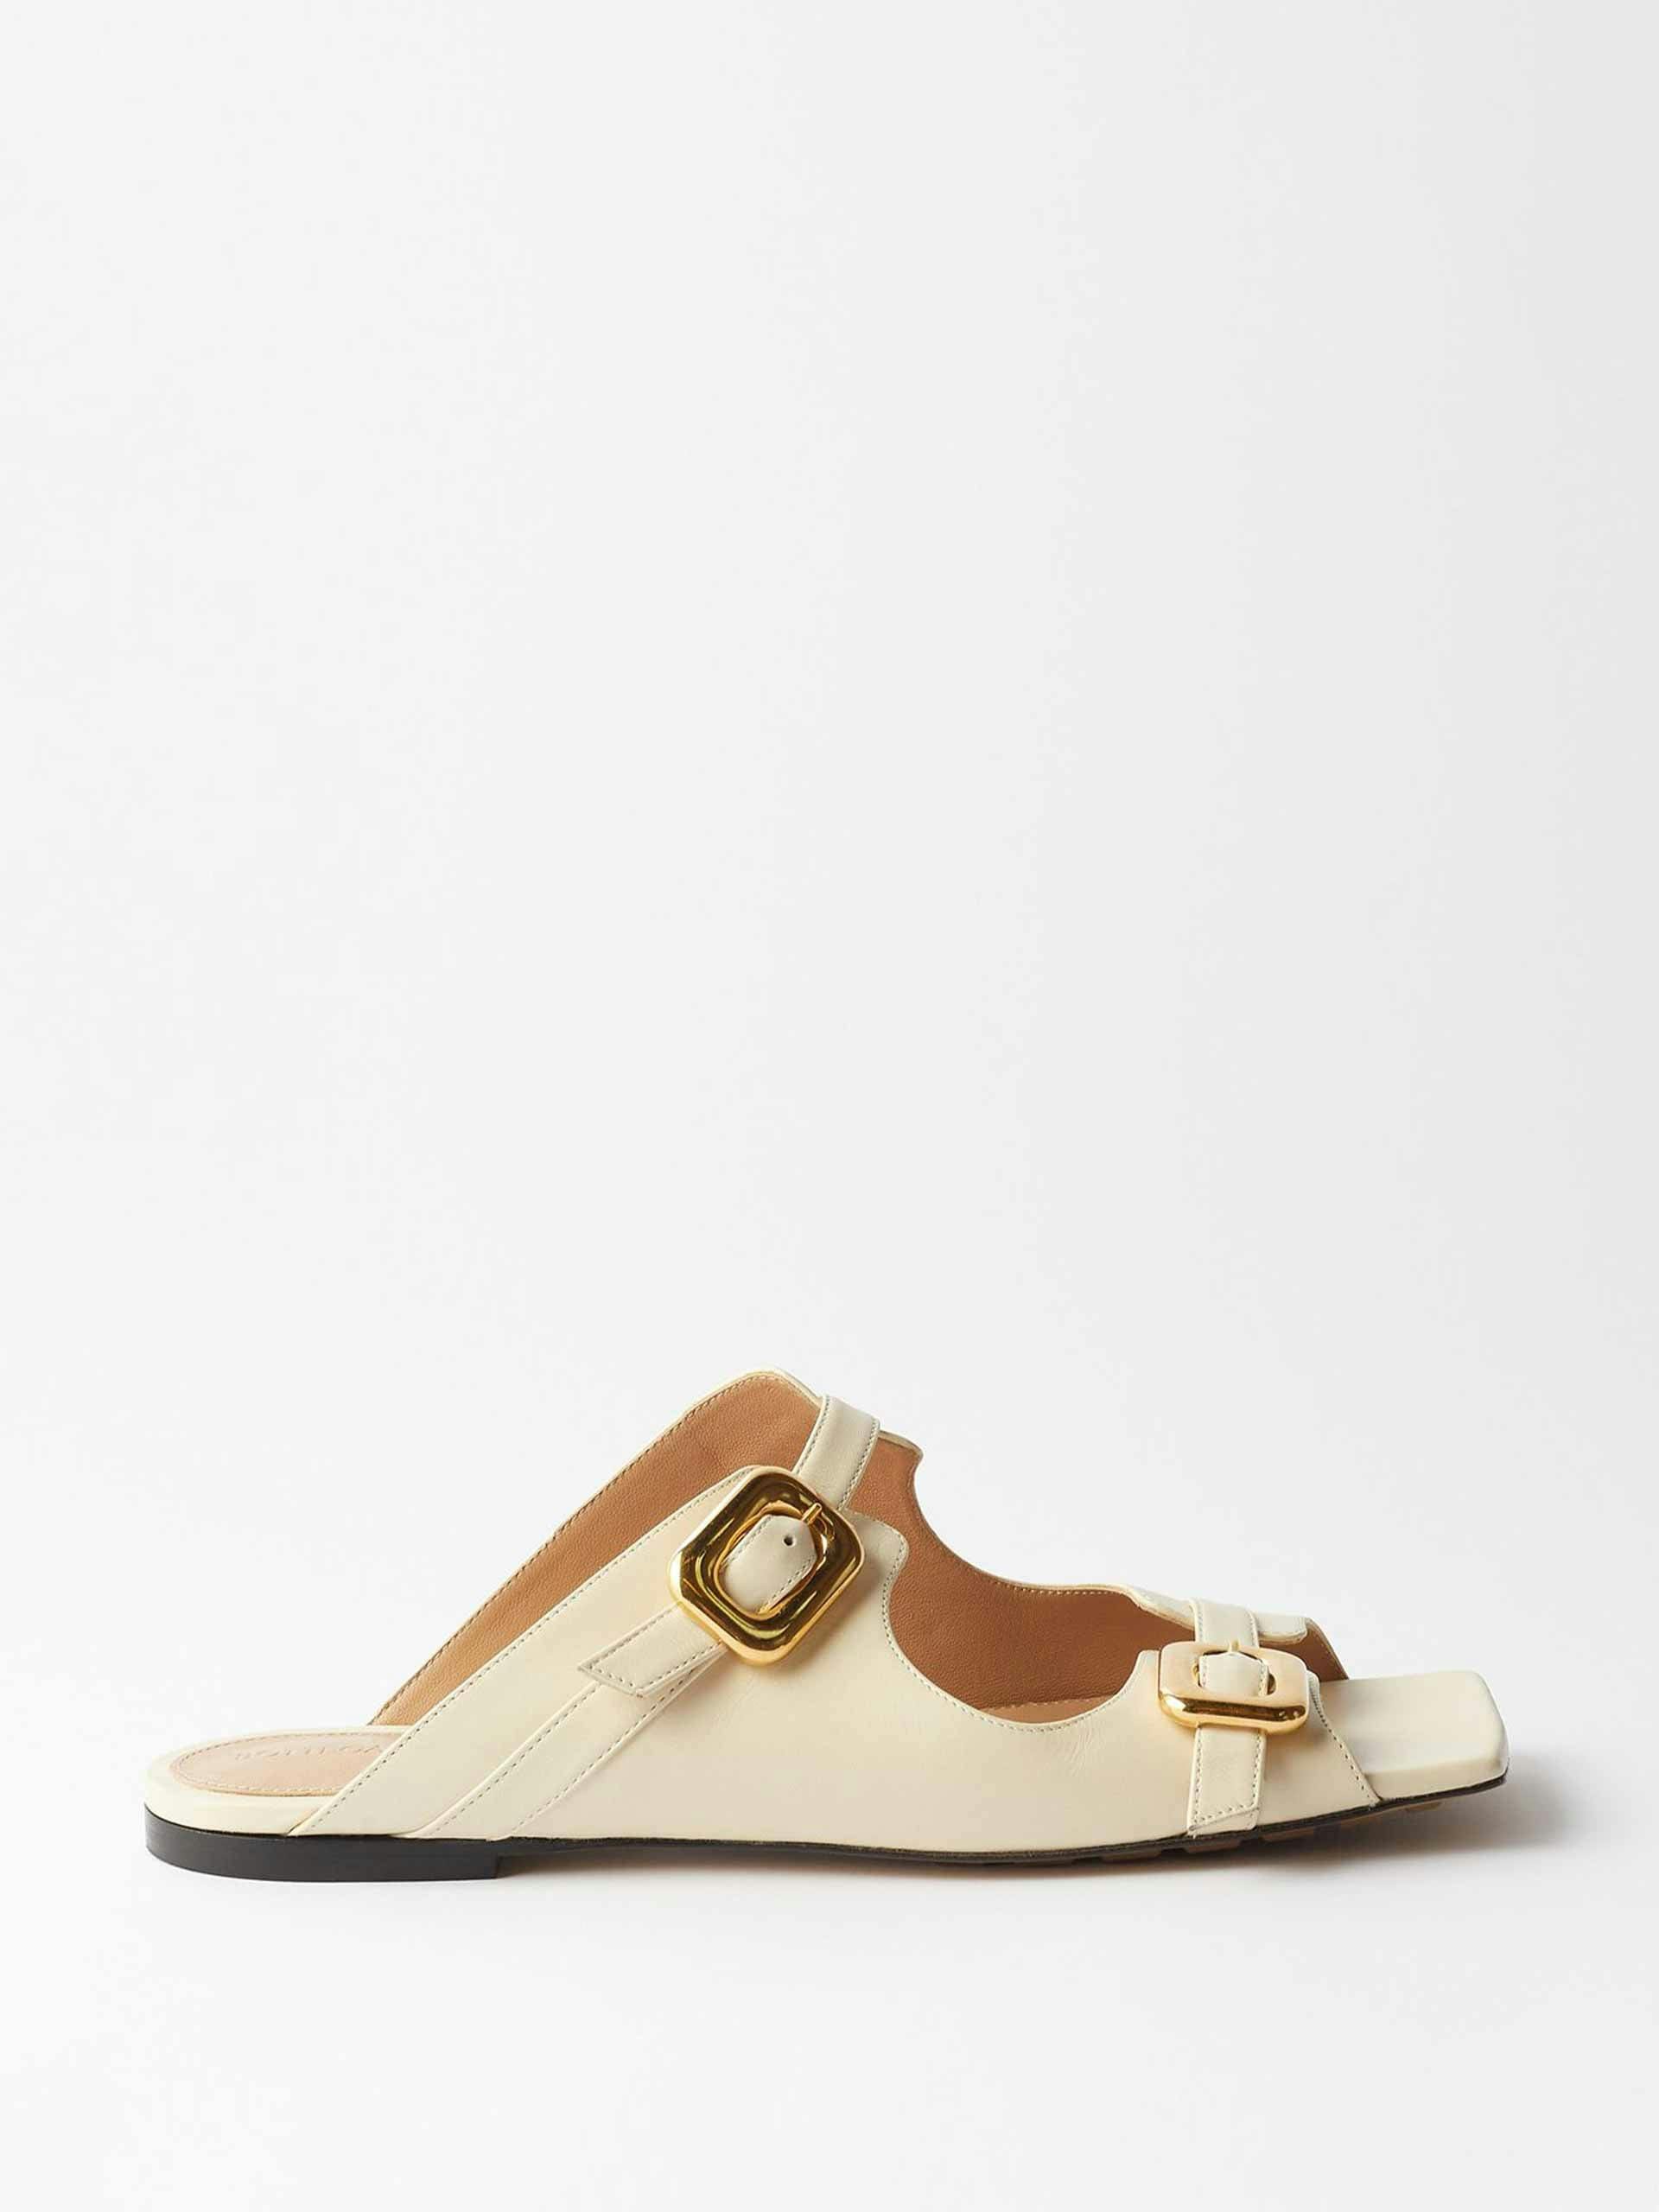 Cream square-toe leather sandals